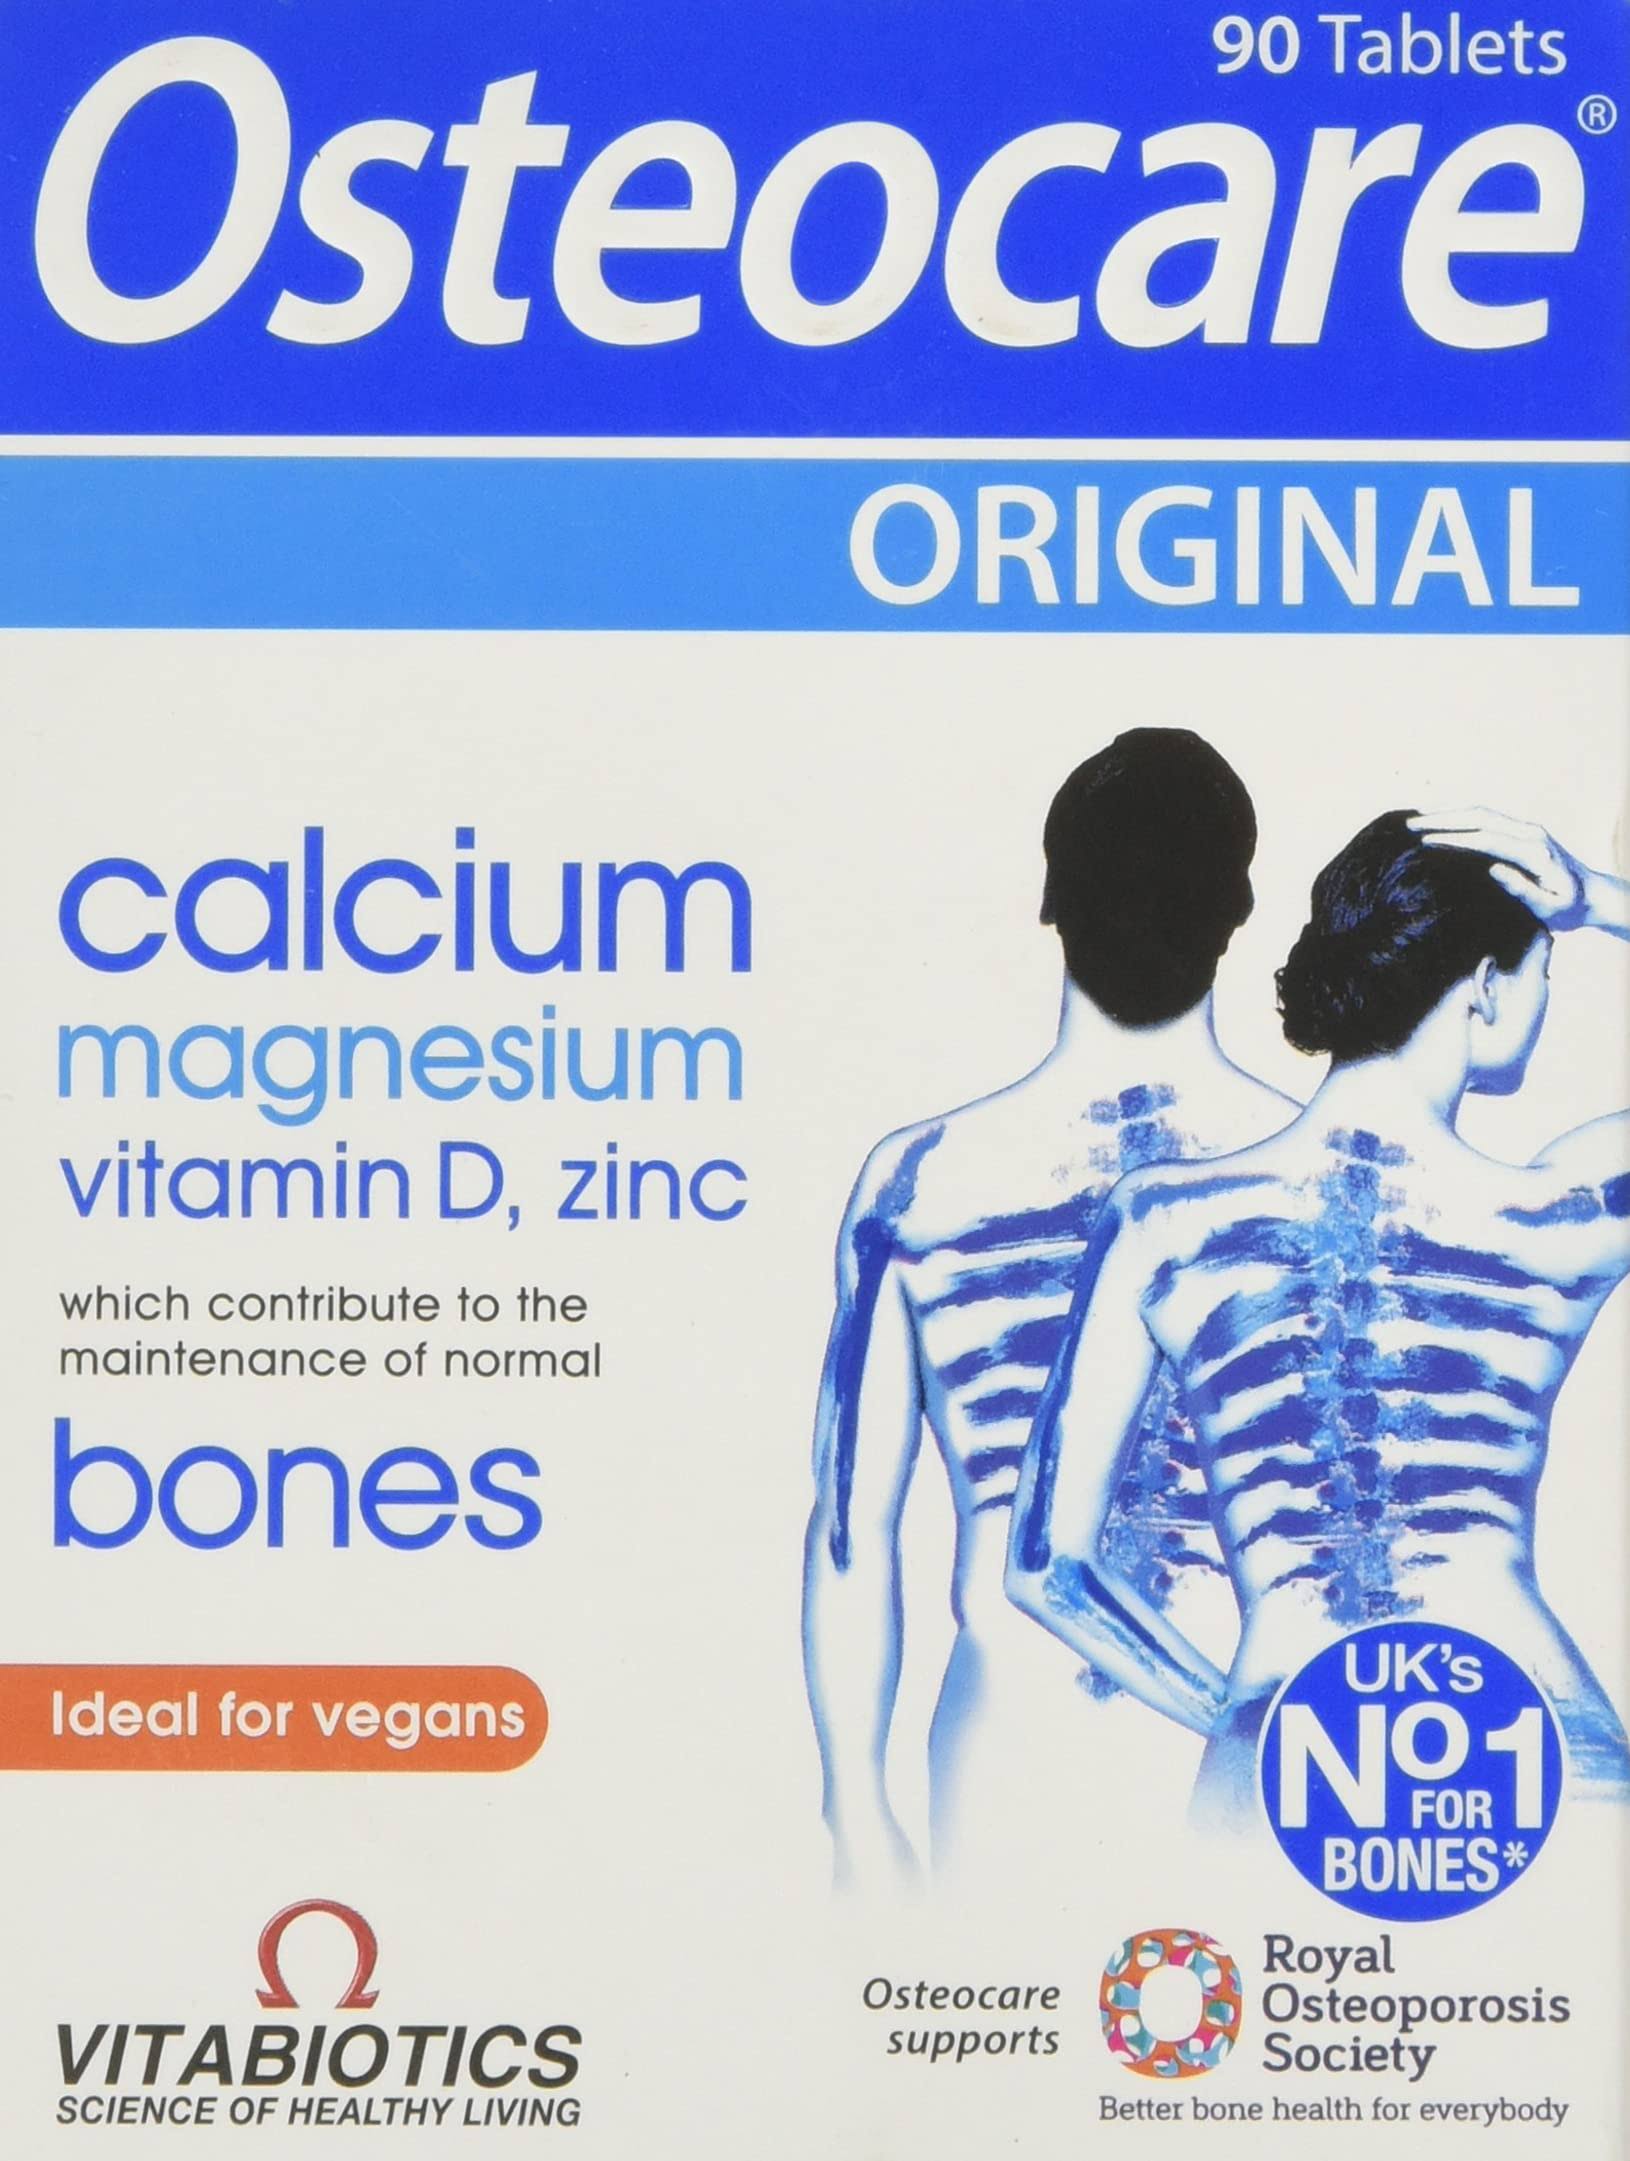 Osteocare Original 90 Pack from Vitabiotics